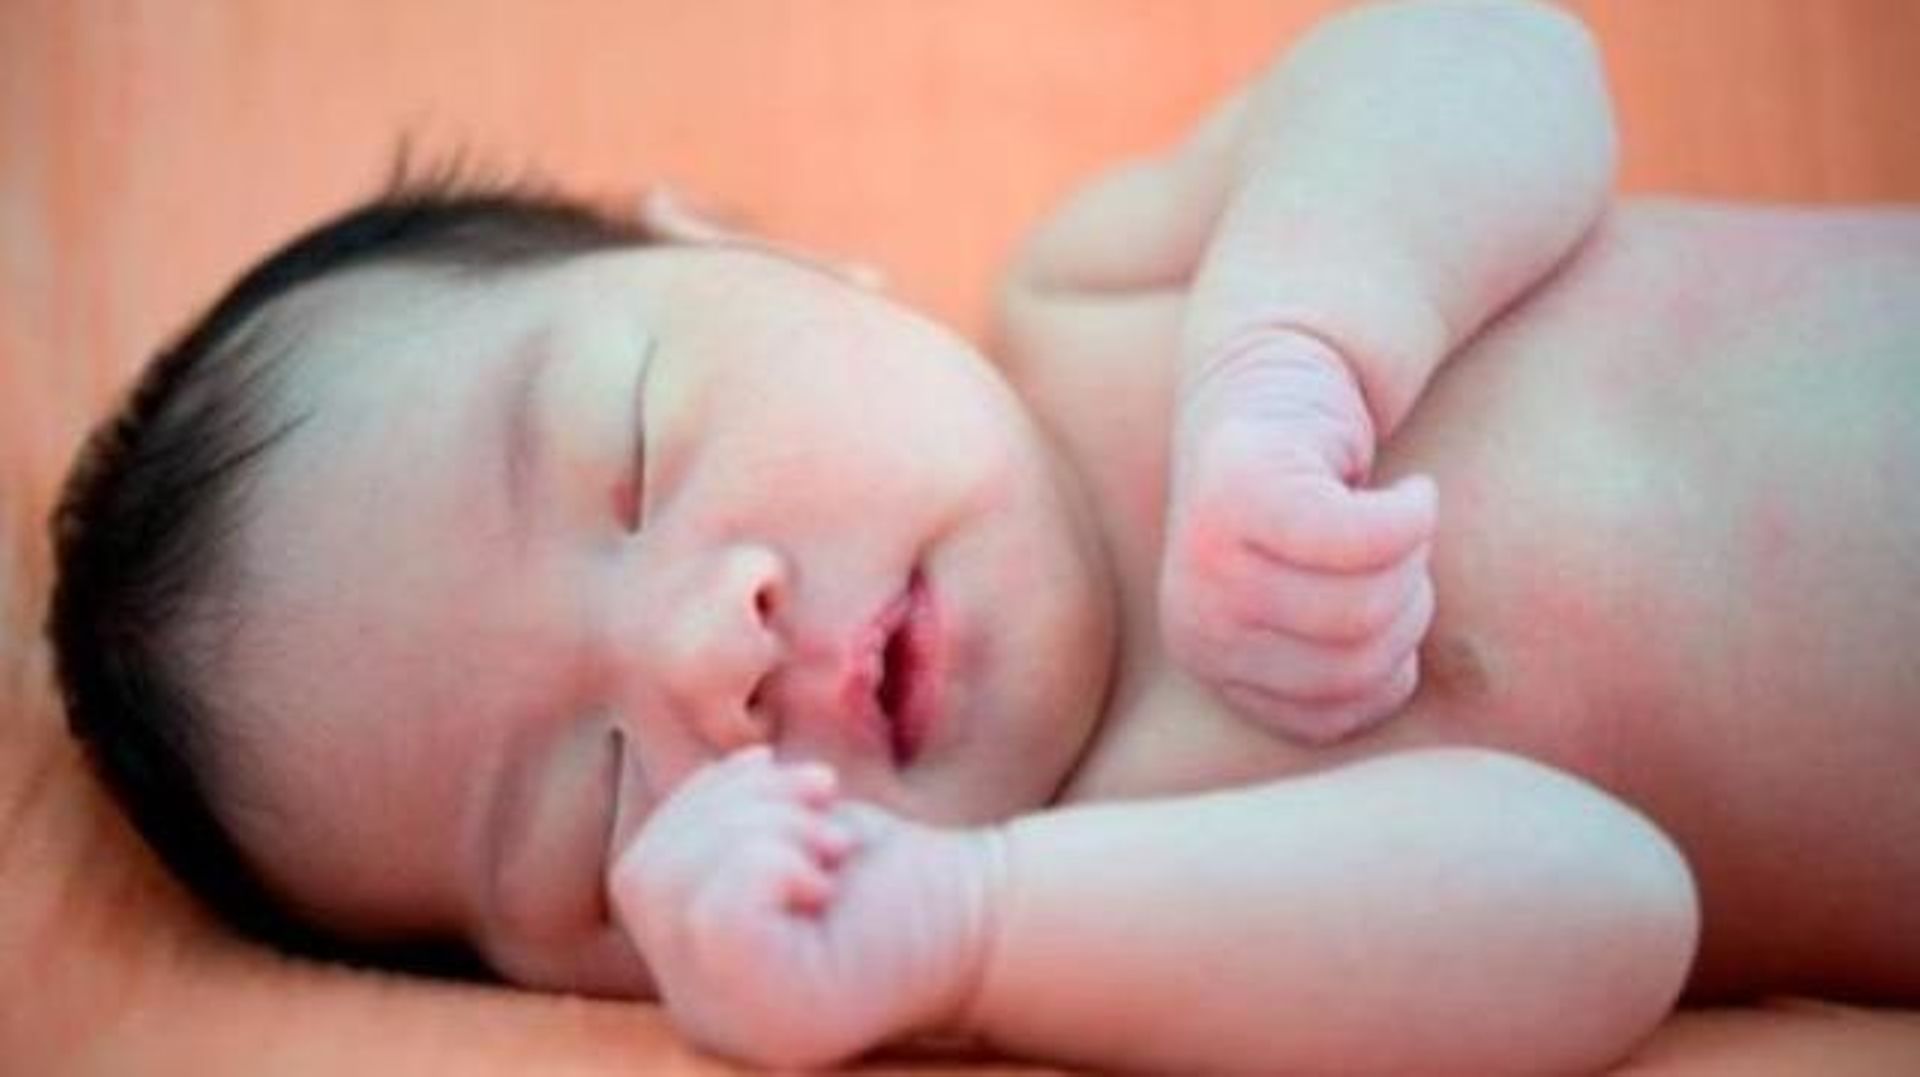 Mortalité infantile: 1 million de bébés meurent dans les 24 heures